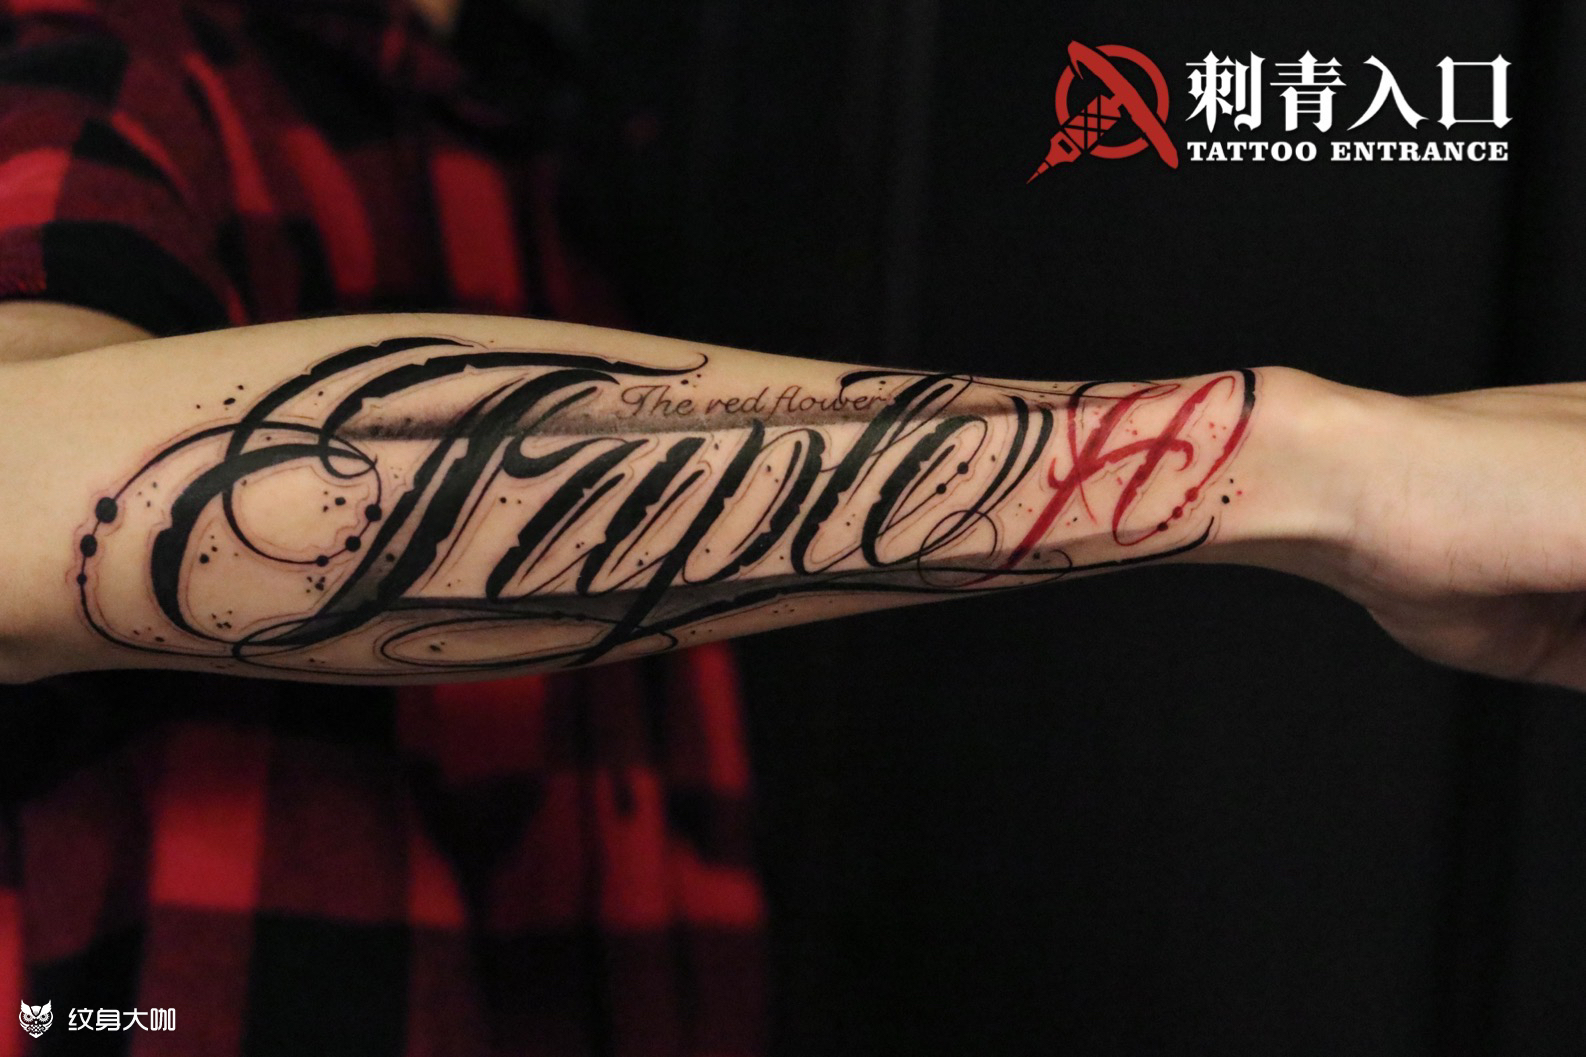 手臂花体字tattoo原创设计成都纹身刺青WE studio - 知乎